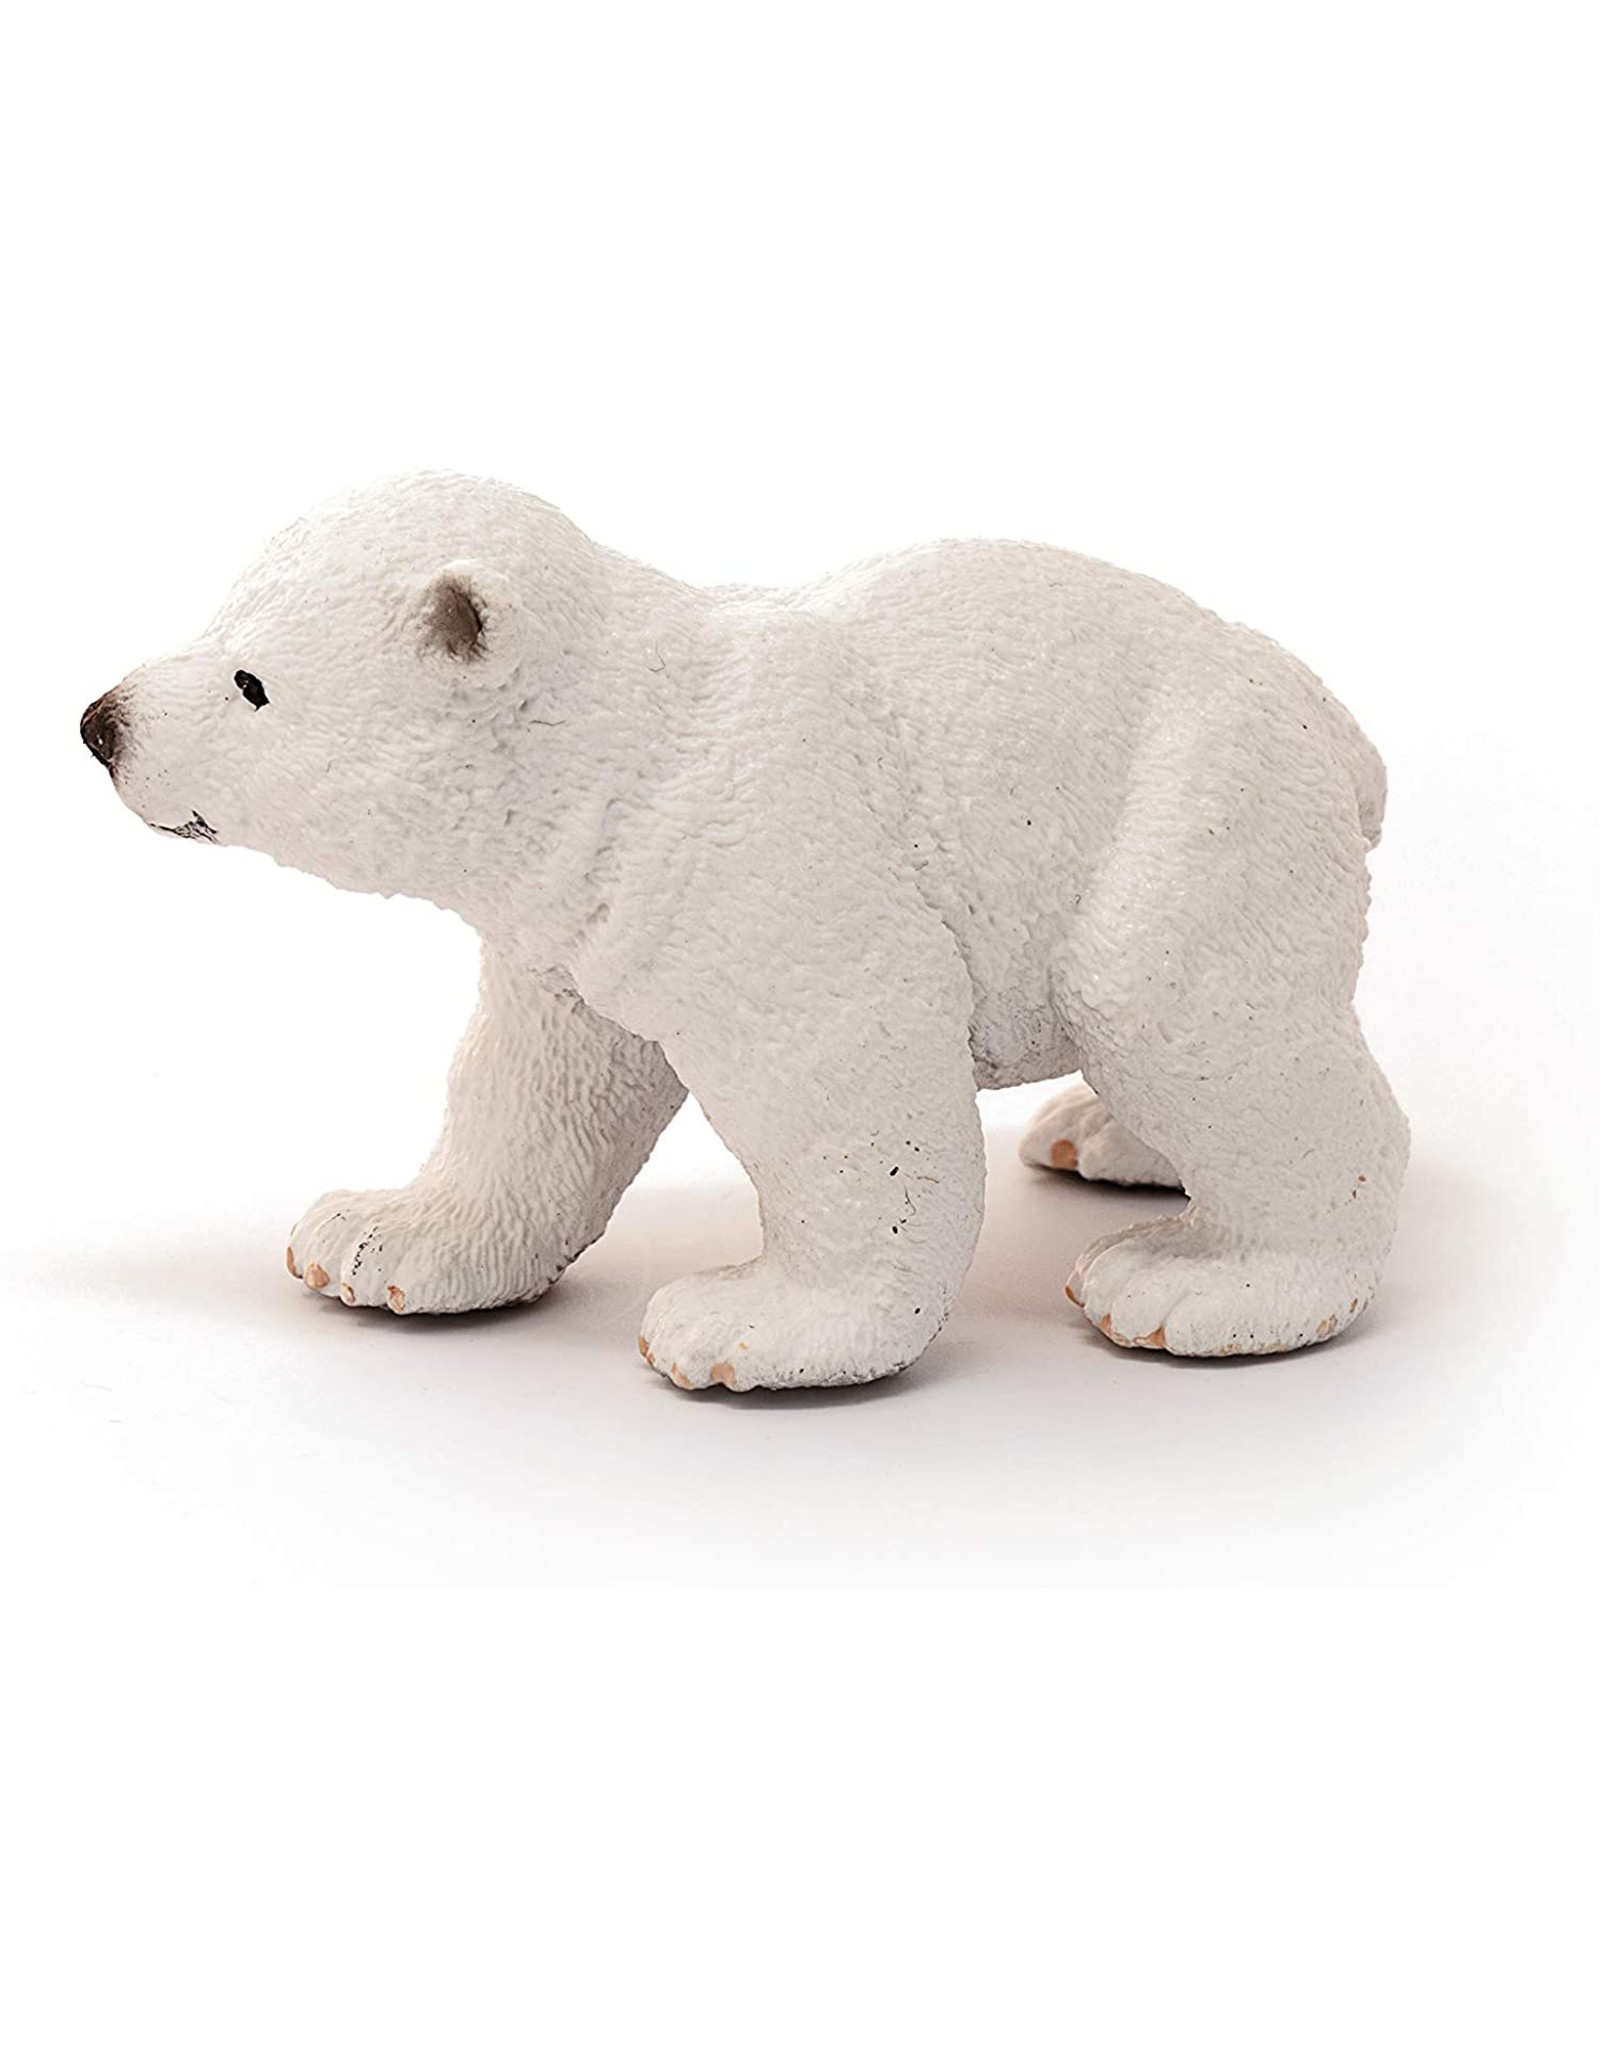 NEW Schleich Walking Baby Polar Bear Cub Toy Figure Alaska North Pole Animals 